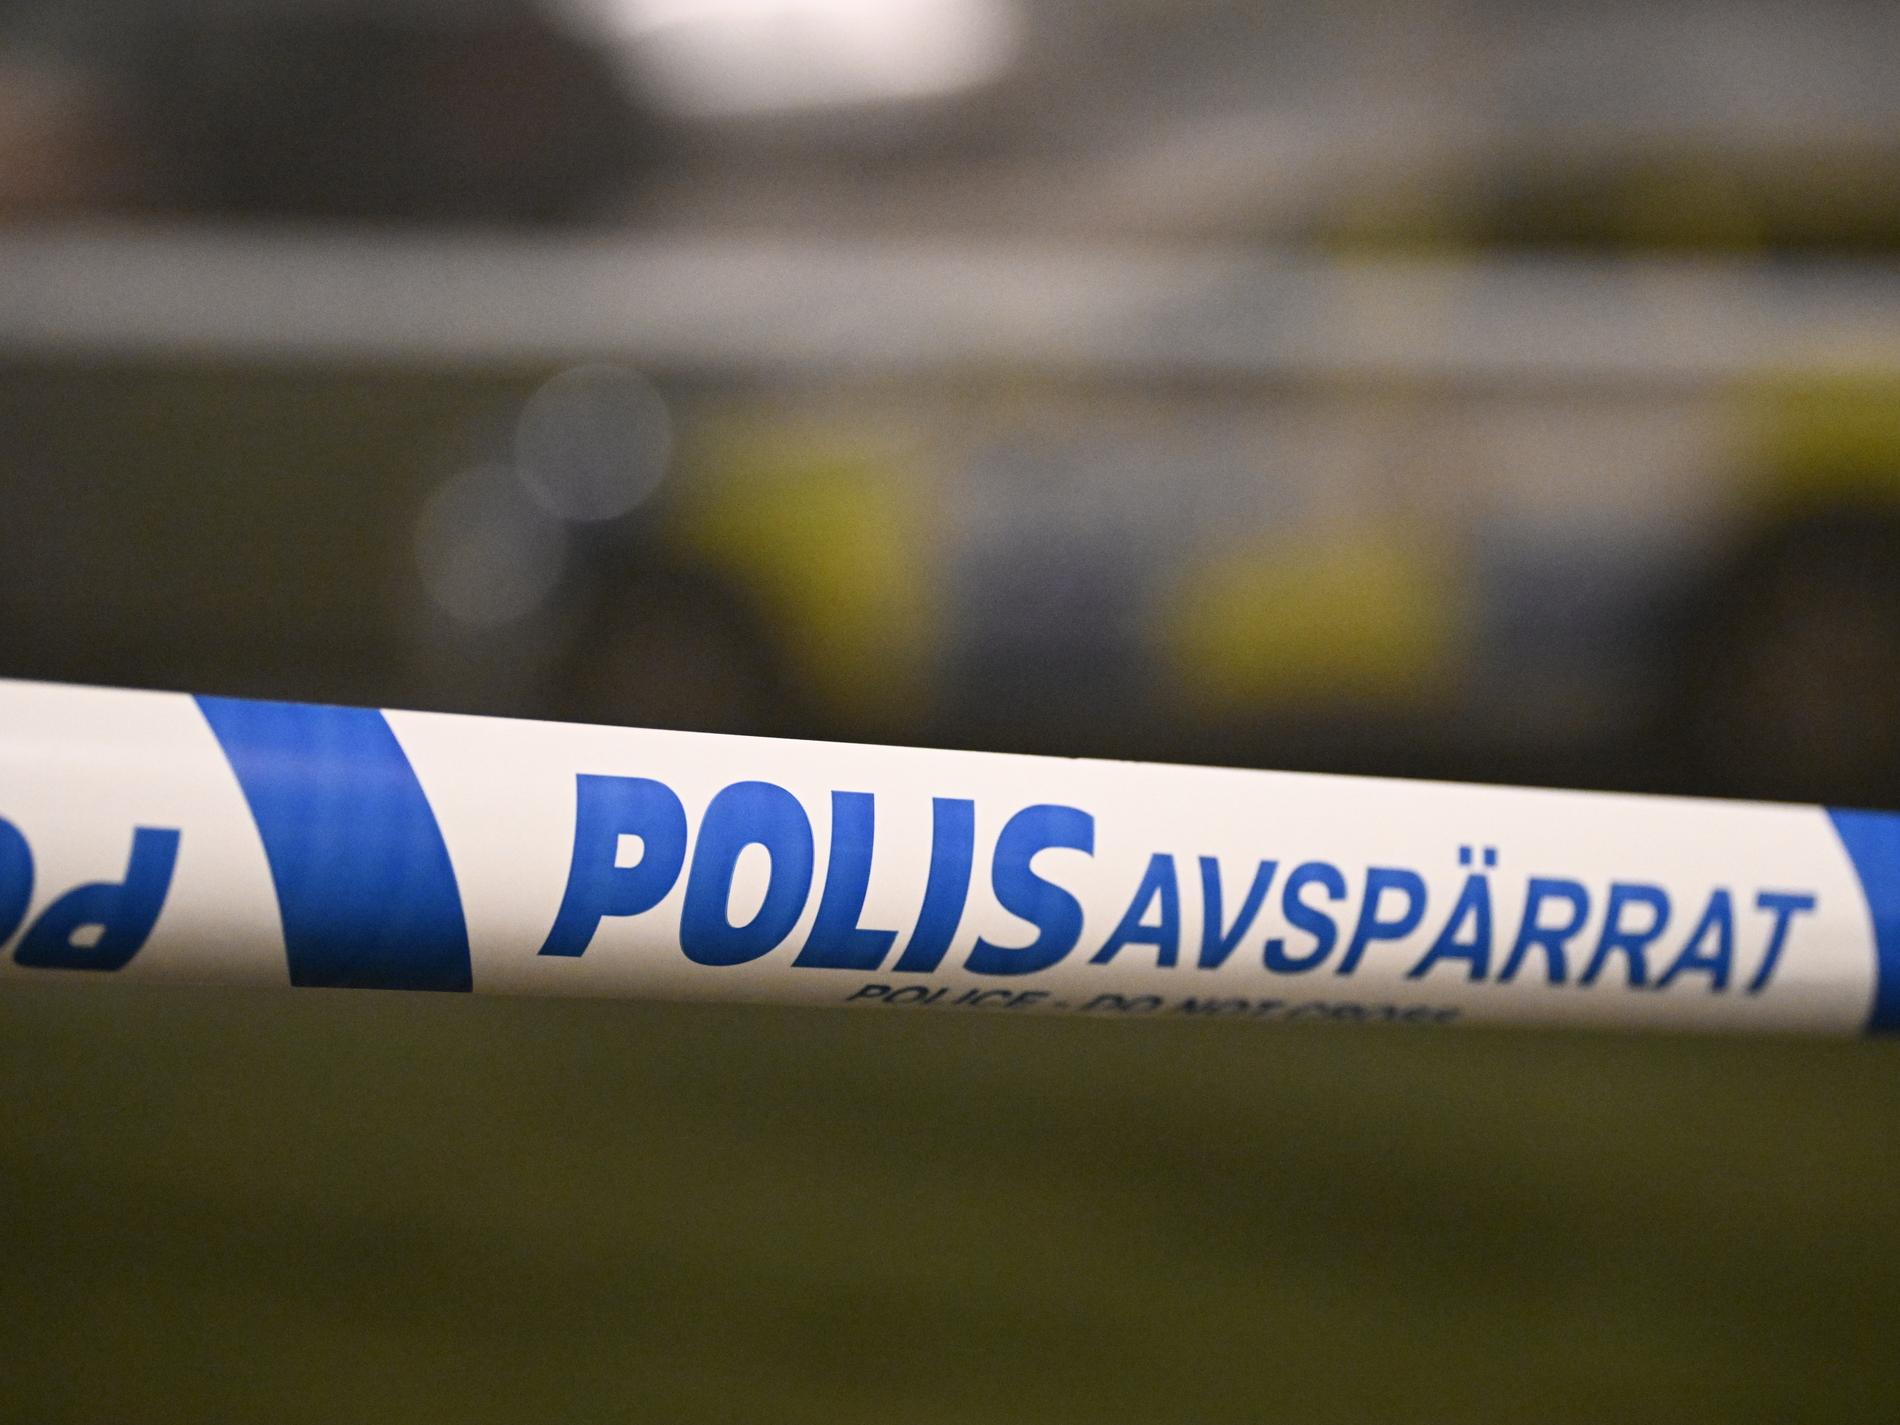 Inget brott bakom kvinnas död i Umeå